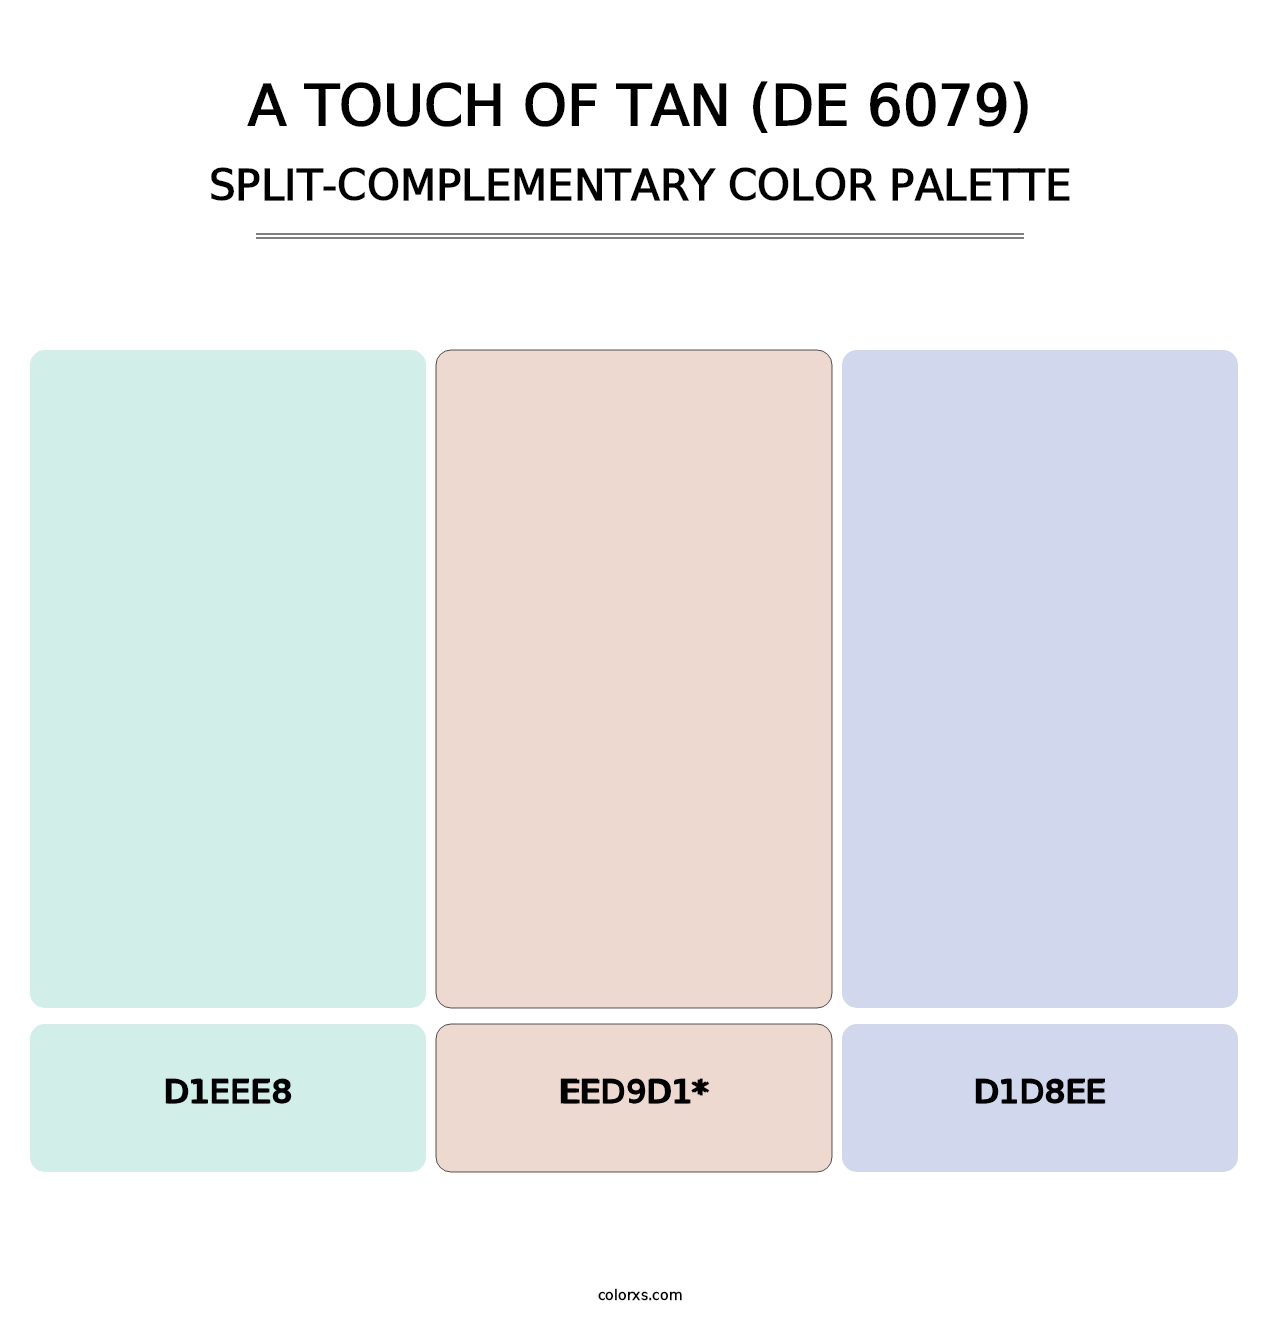 A Touch of Tan (DE 6079) - Split-Complementary Color Palette